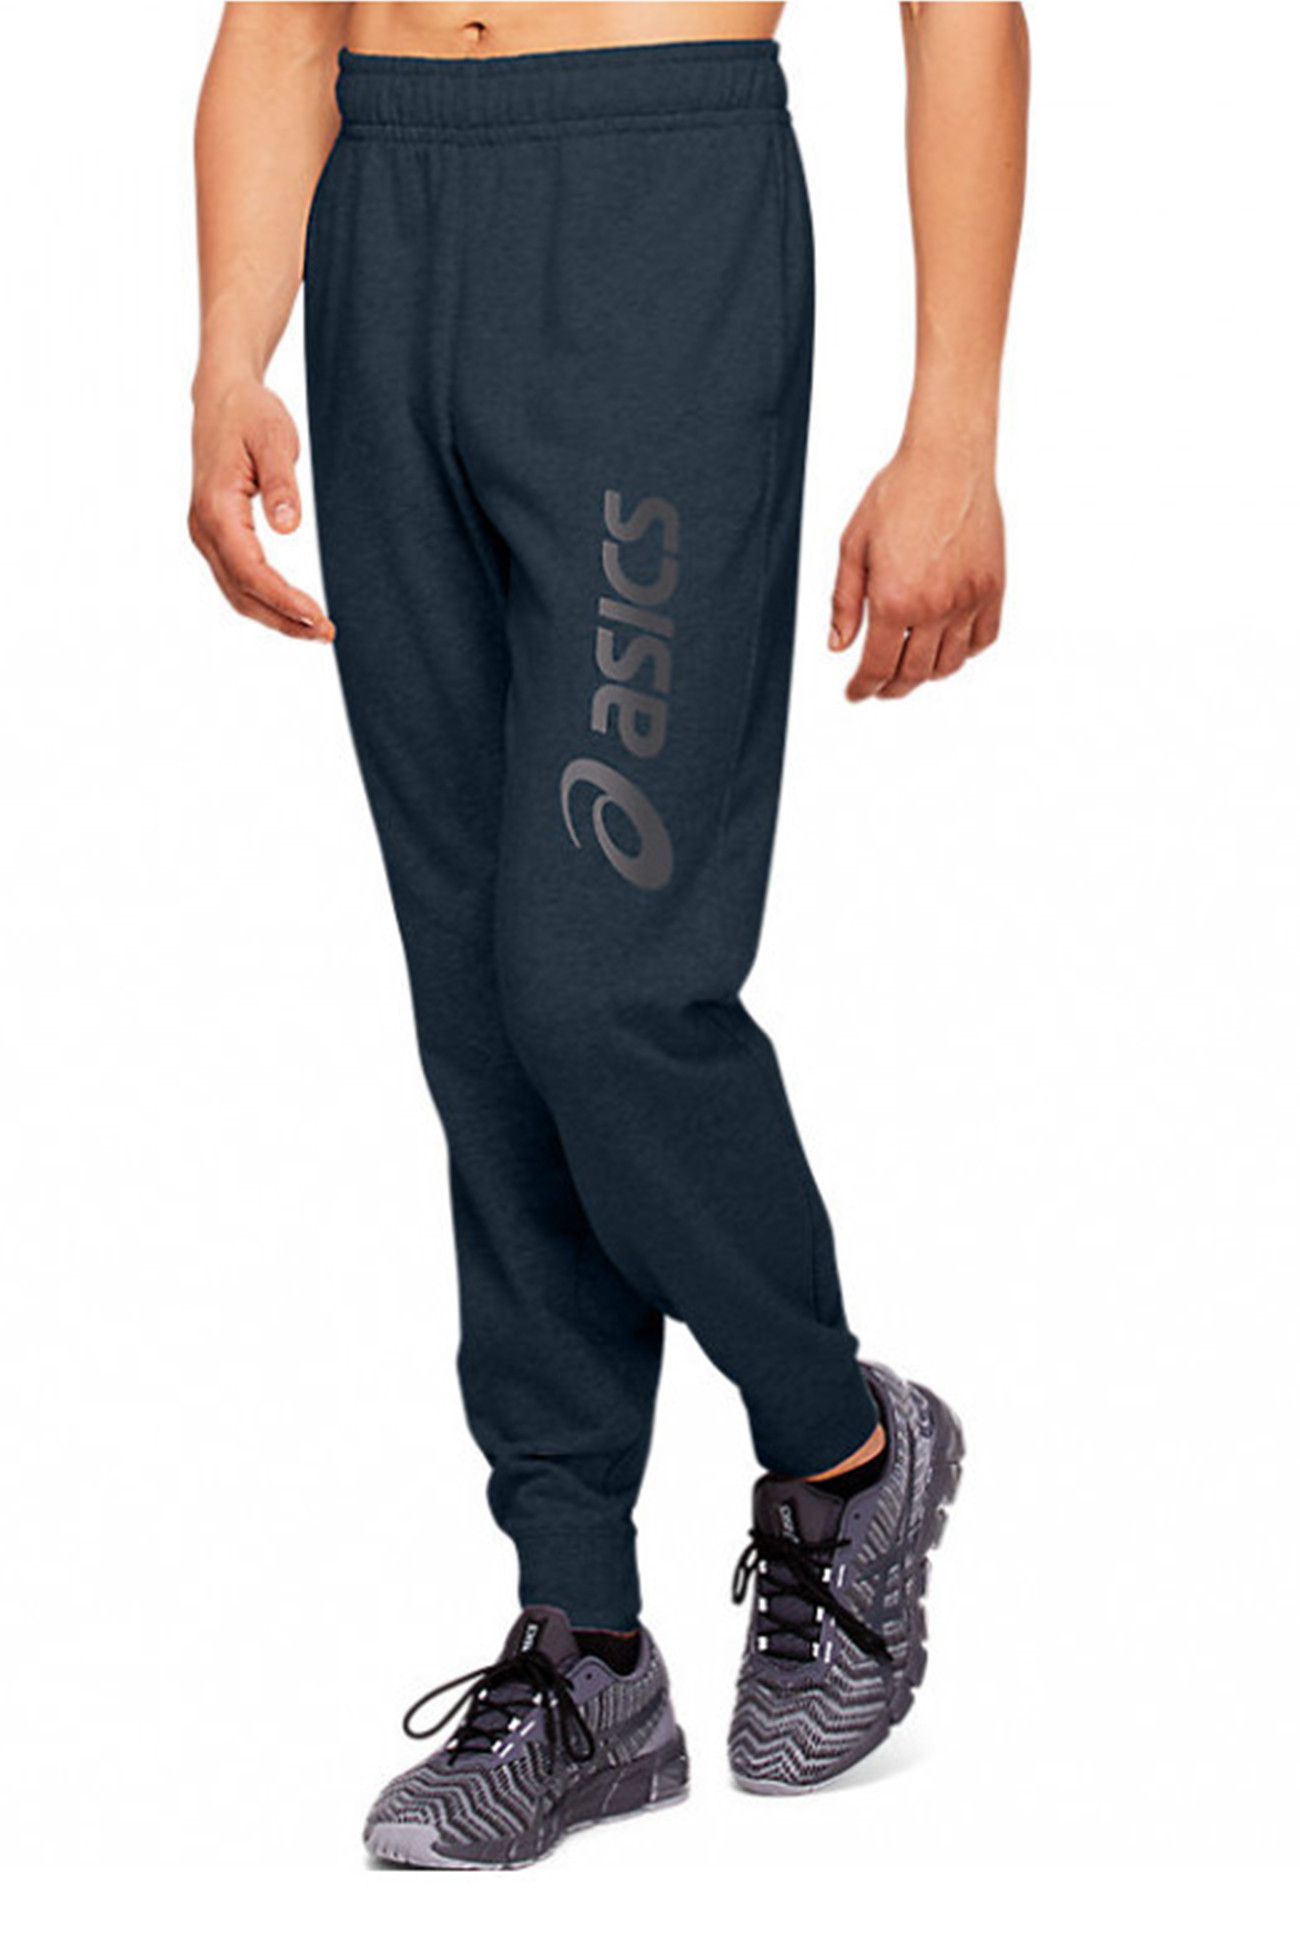 Штани чоловічі Asics Big Logo Sweat Pant сині 2031A977-409 